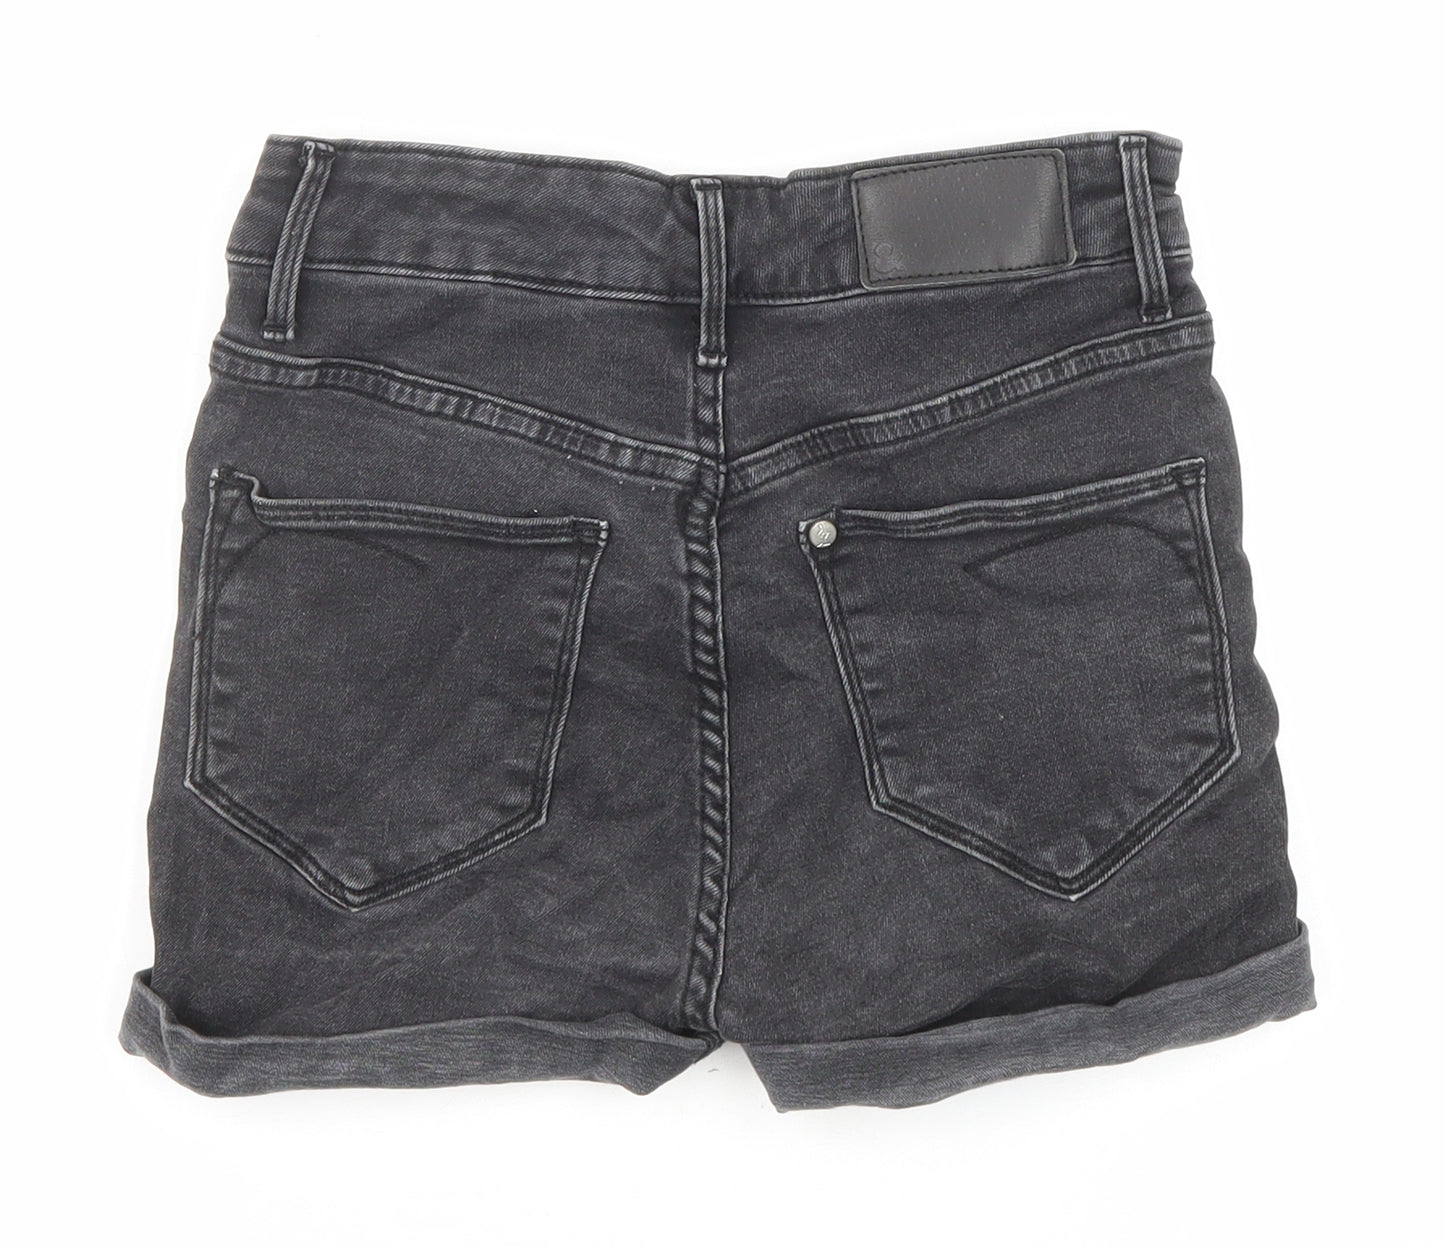 H&M Womens Black Cotton Boyfriend Shorts Size 6 Regular Zip